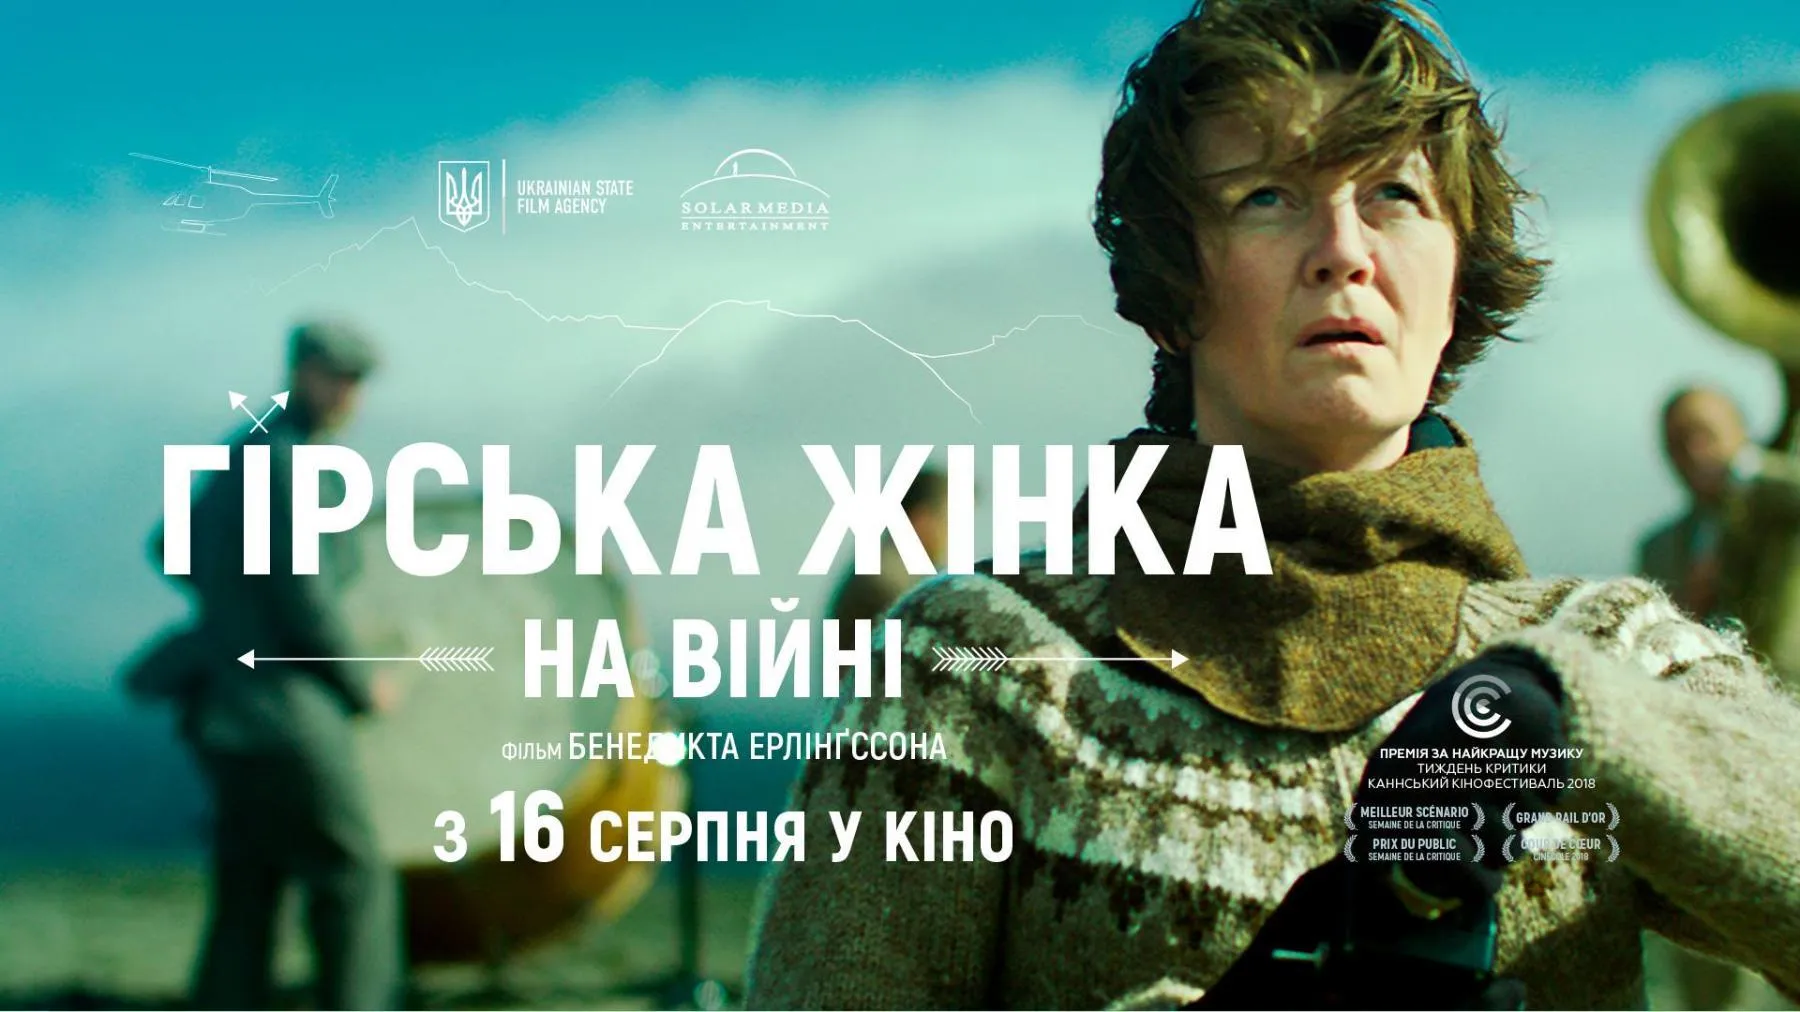 Гірська жінка: на війні кіно українське кіно